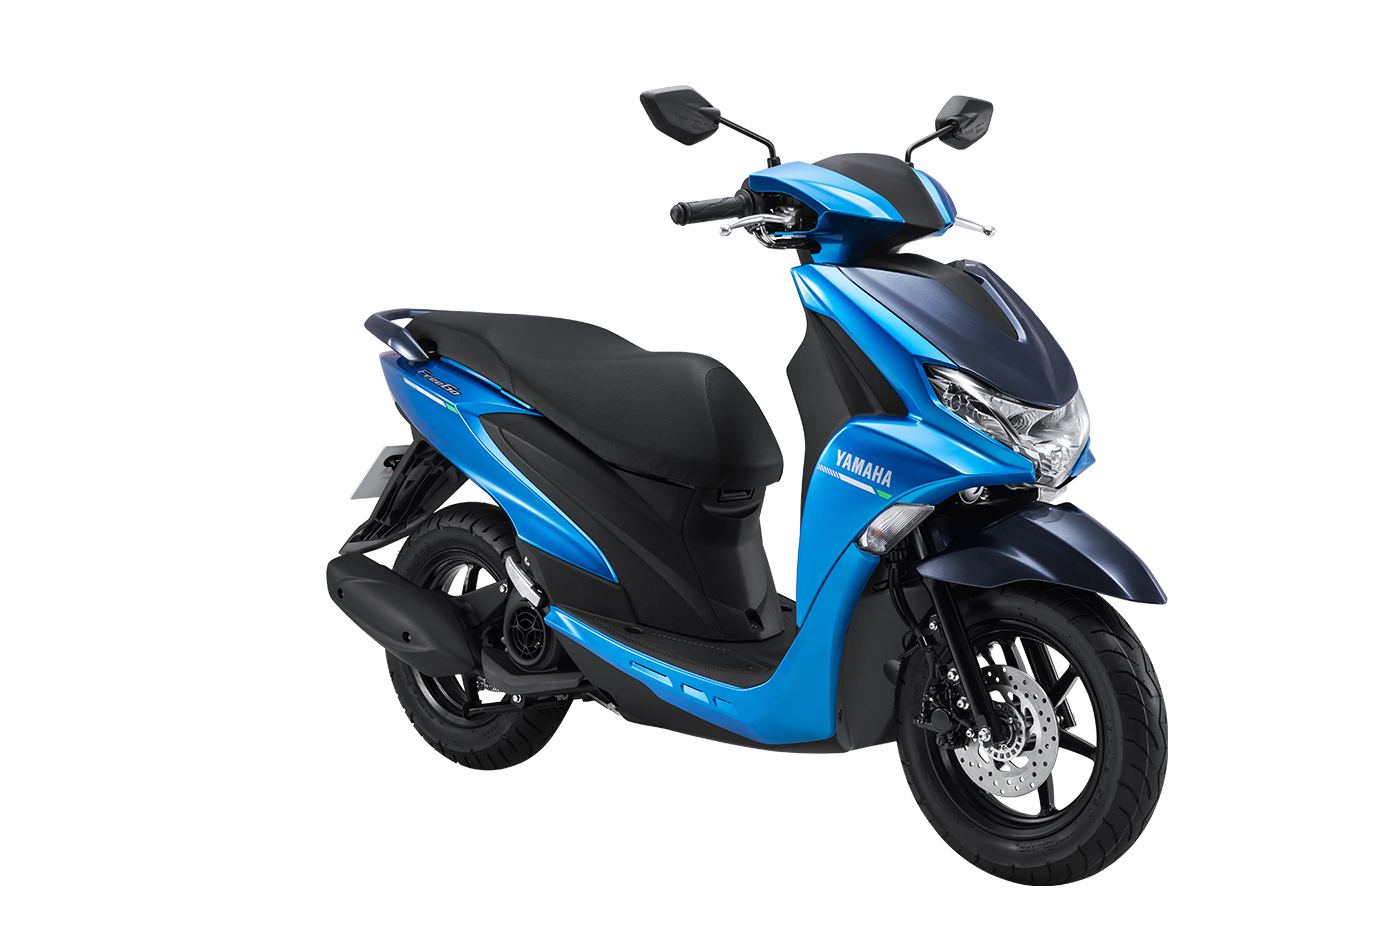  Yamaha Freego xe tay ga tinh tế, sang trọng dành cho nam